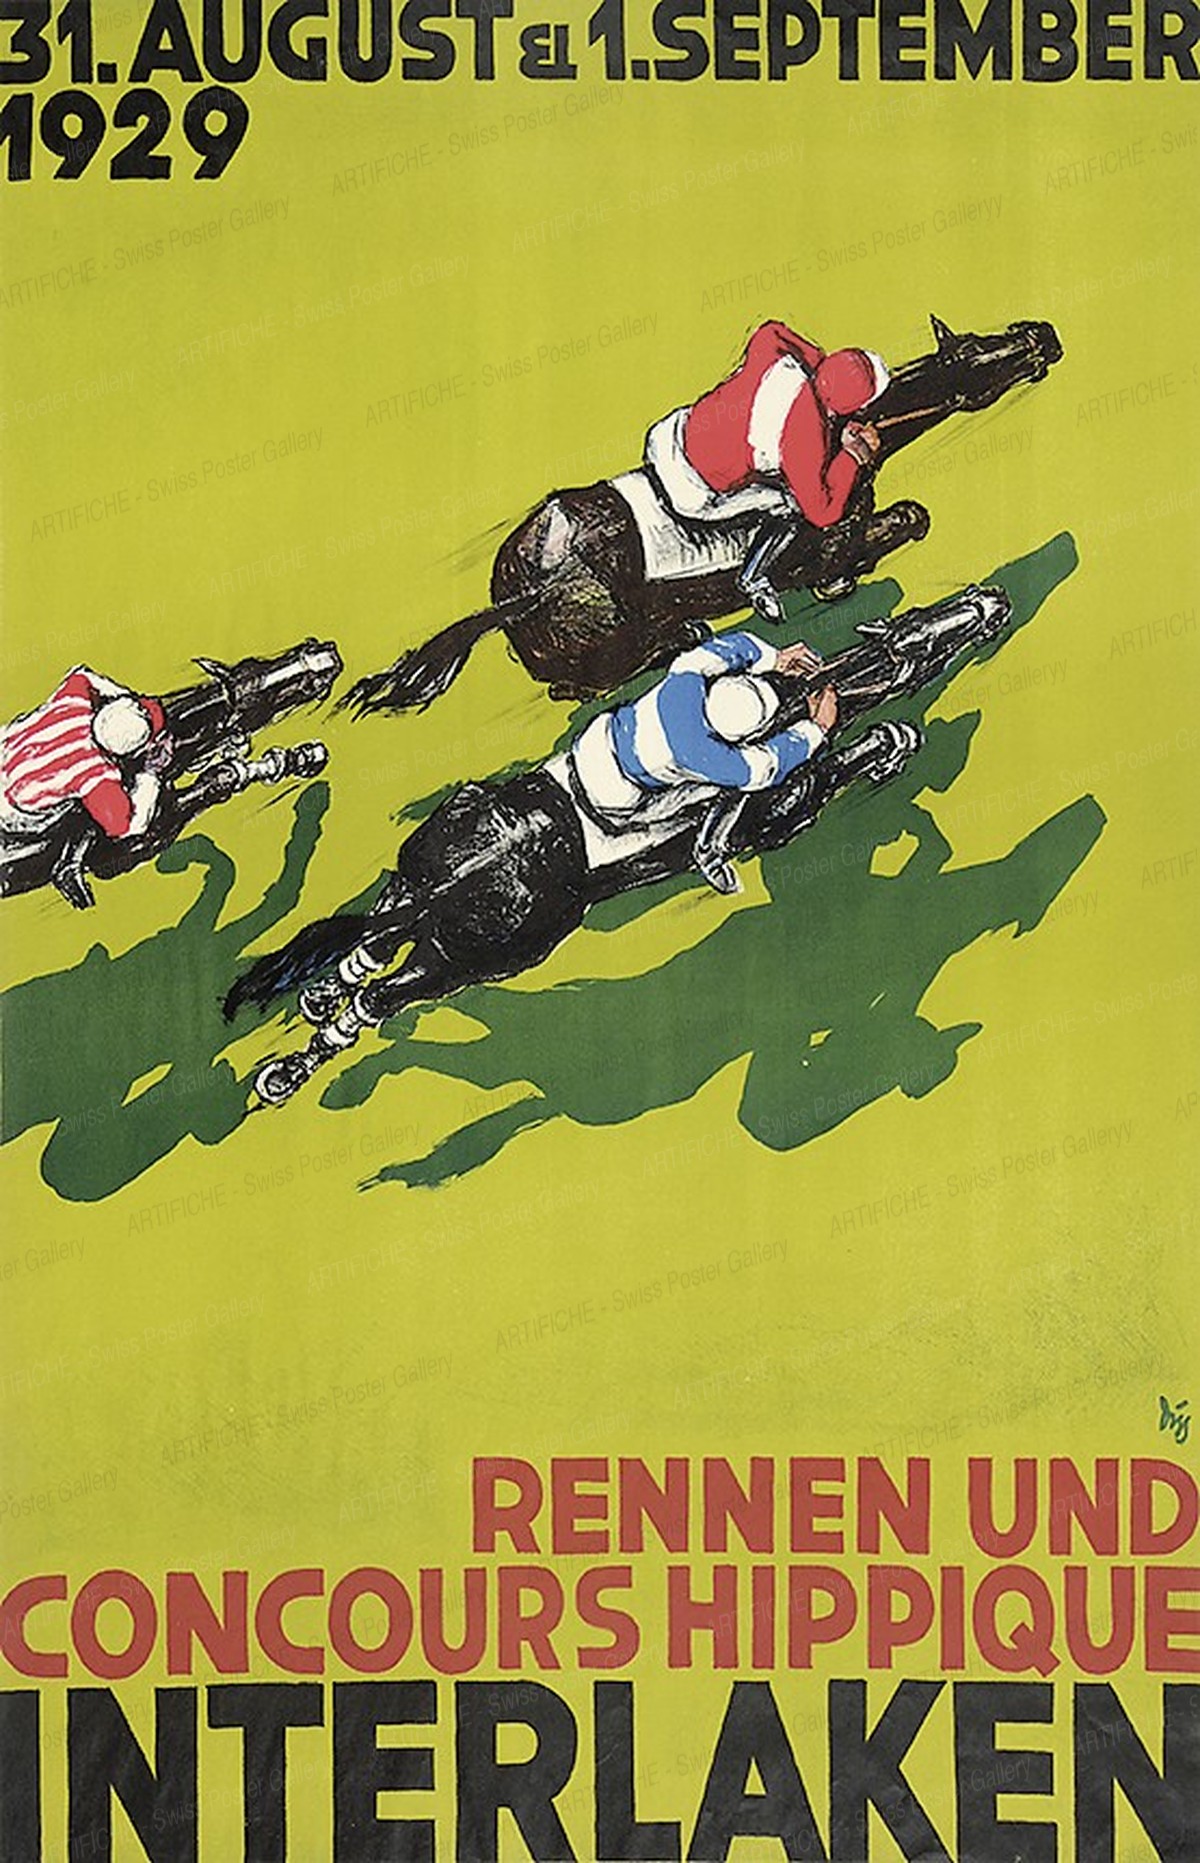 Horse Race Interlaken 1929, Alex Walter Diggelmann